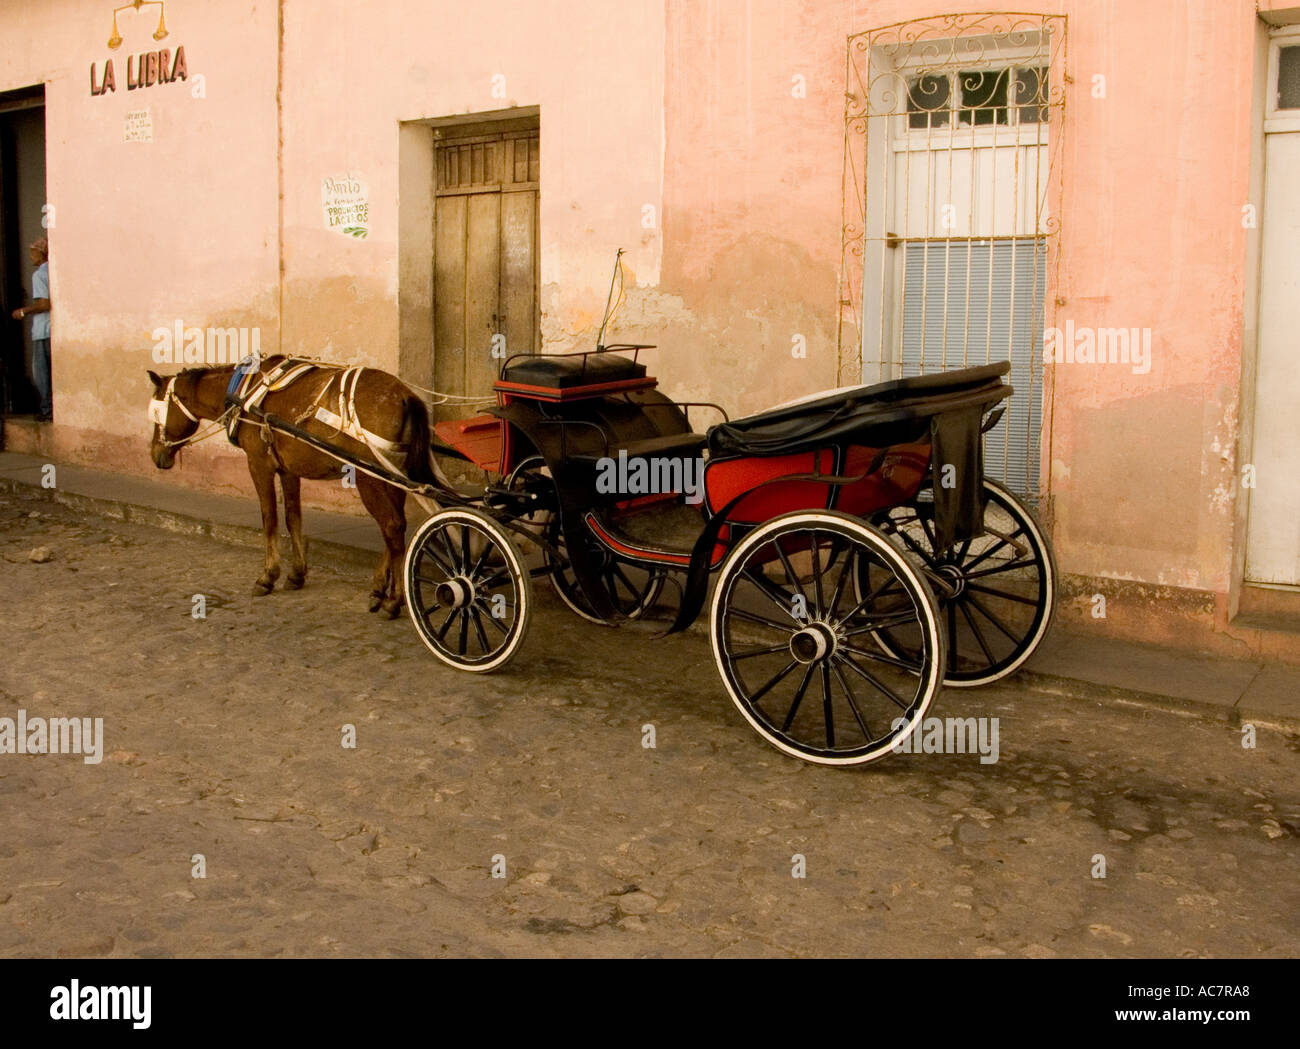 Transport touristique de Cuba en attente de clients dans une rue de Trinidad de cuba cuba Banque D'Images